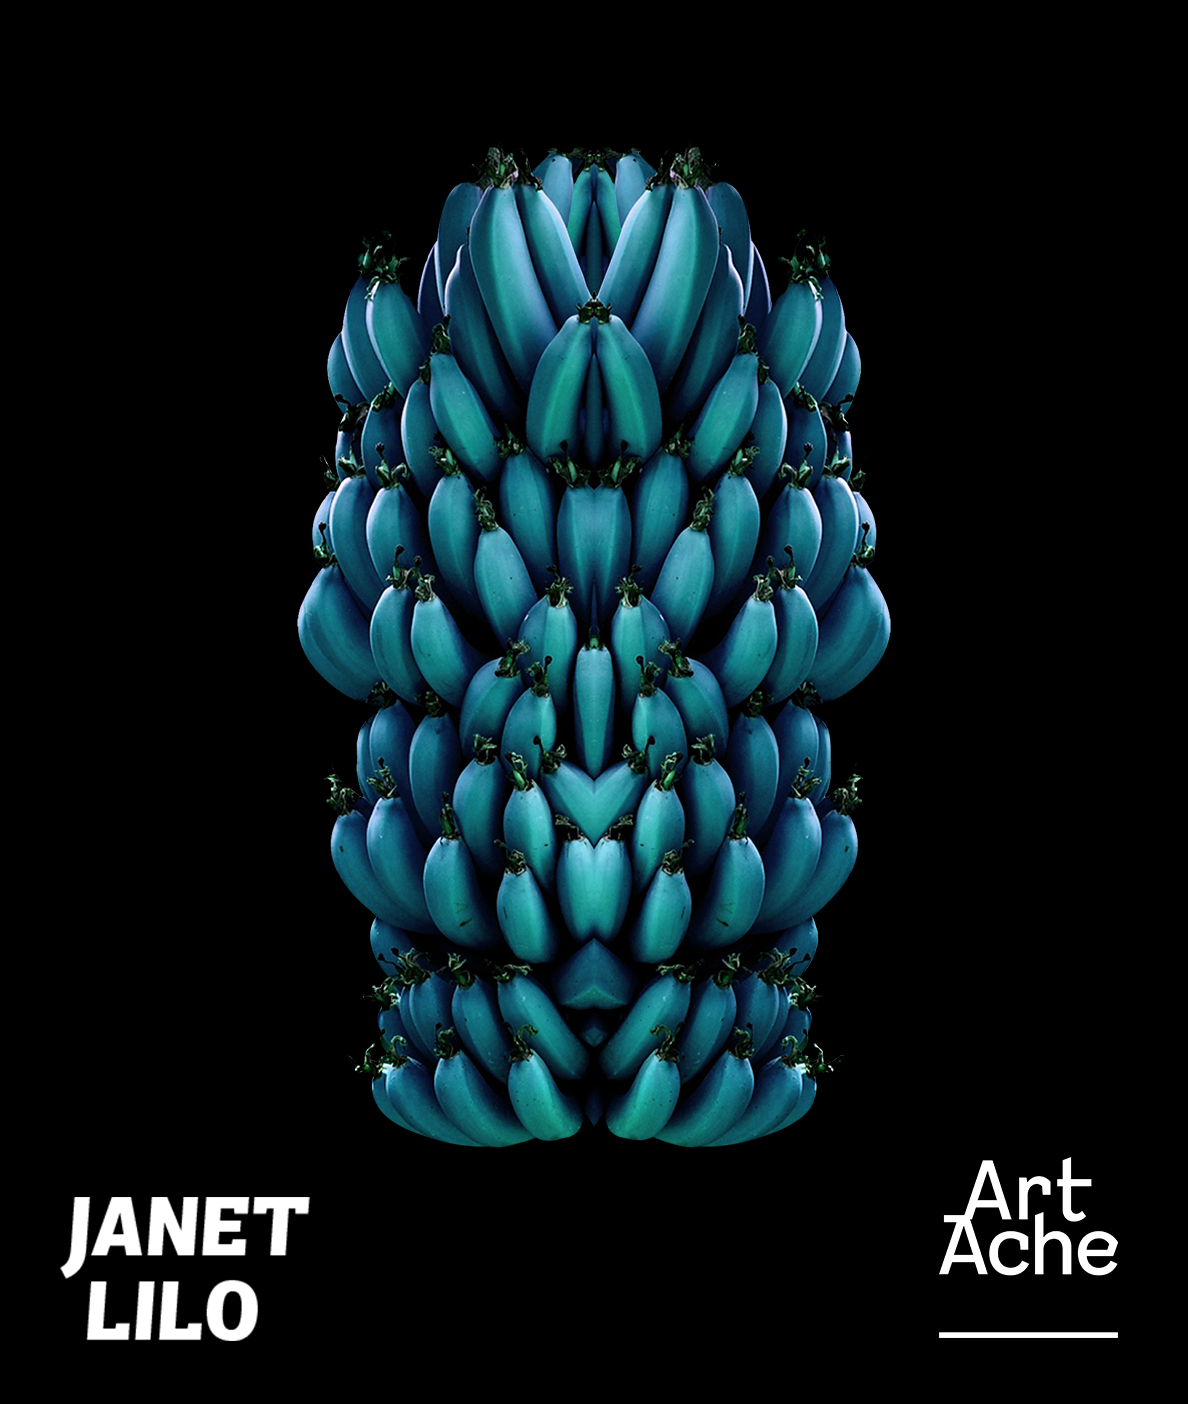 Janet Lilo Art Ache